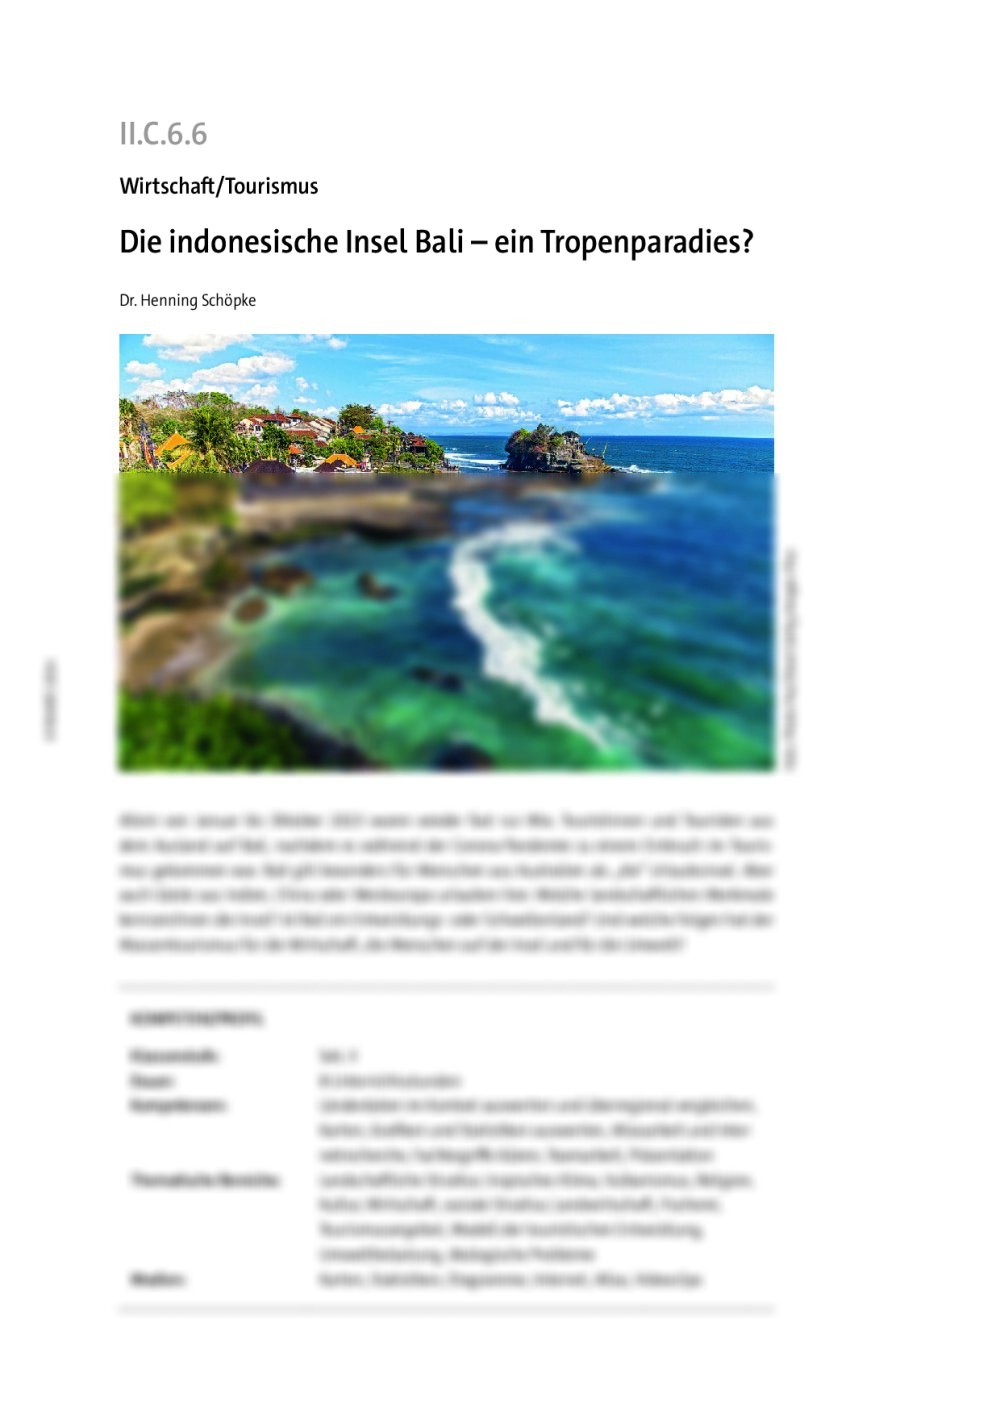 Die indonesische Insel Bali  - Seite 1